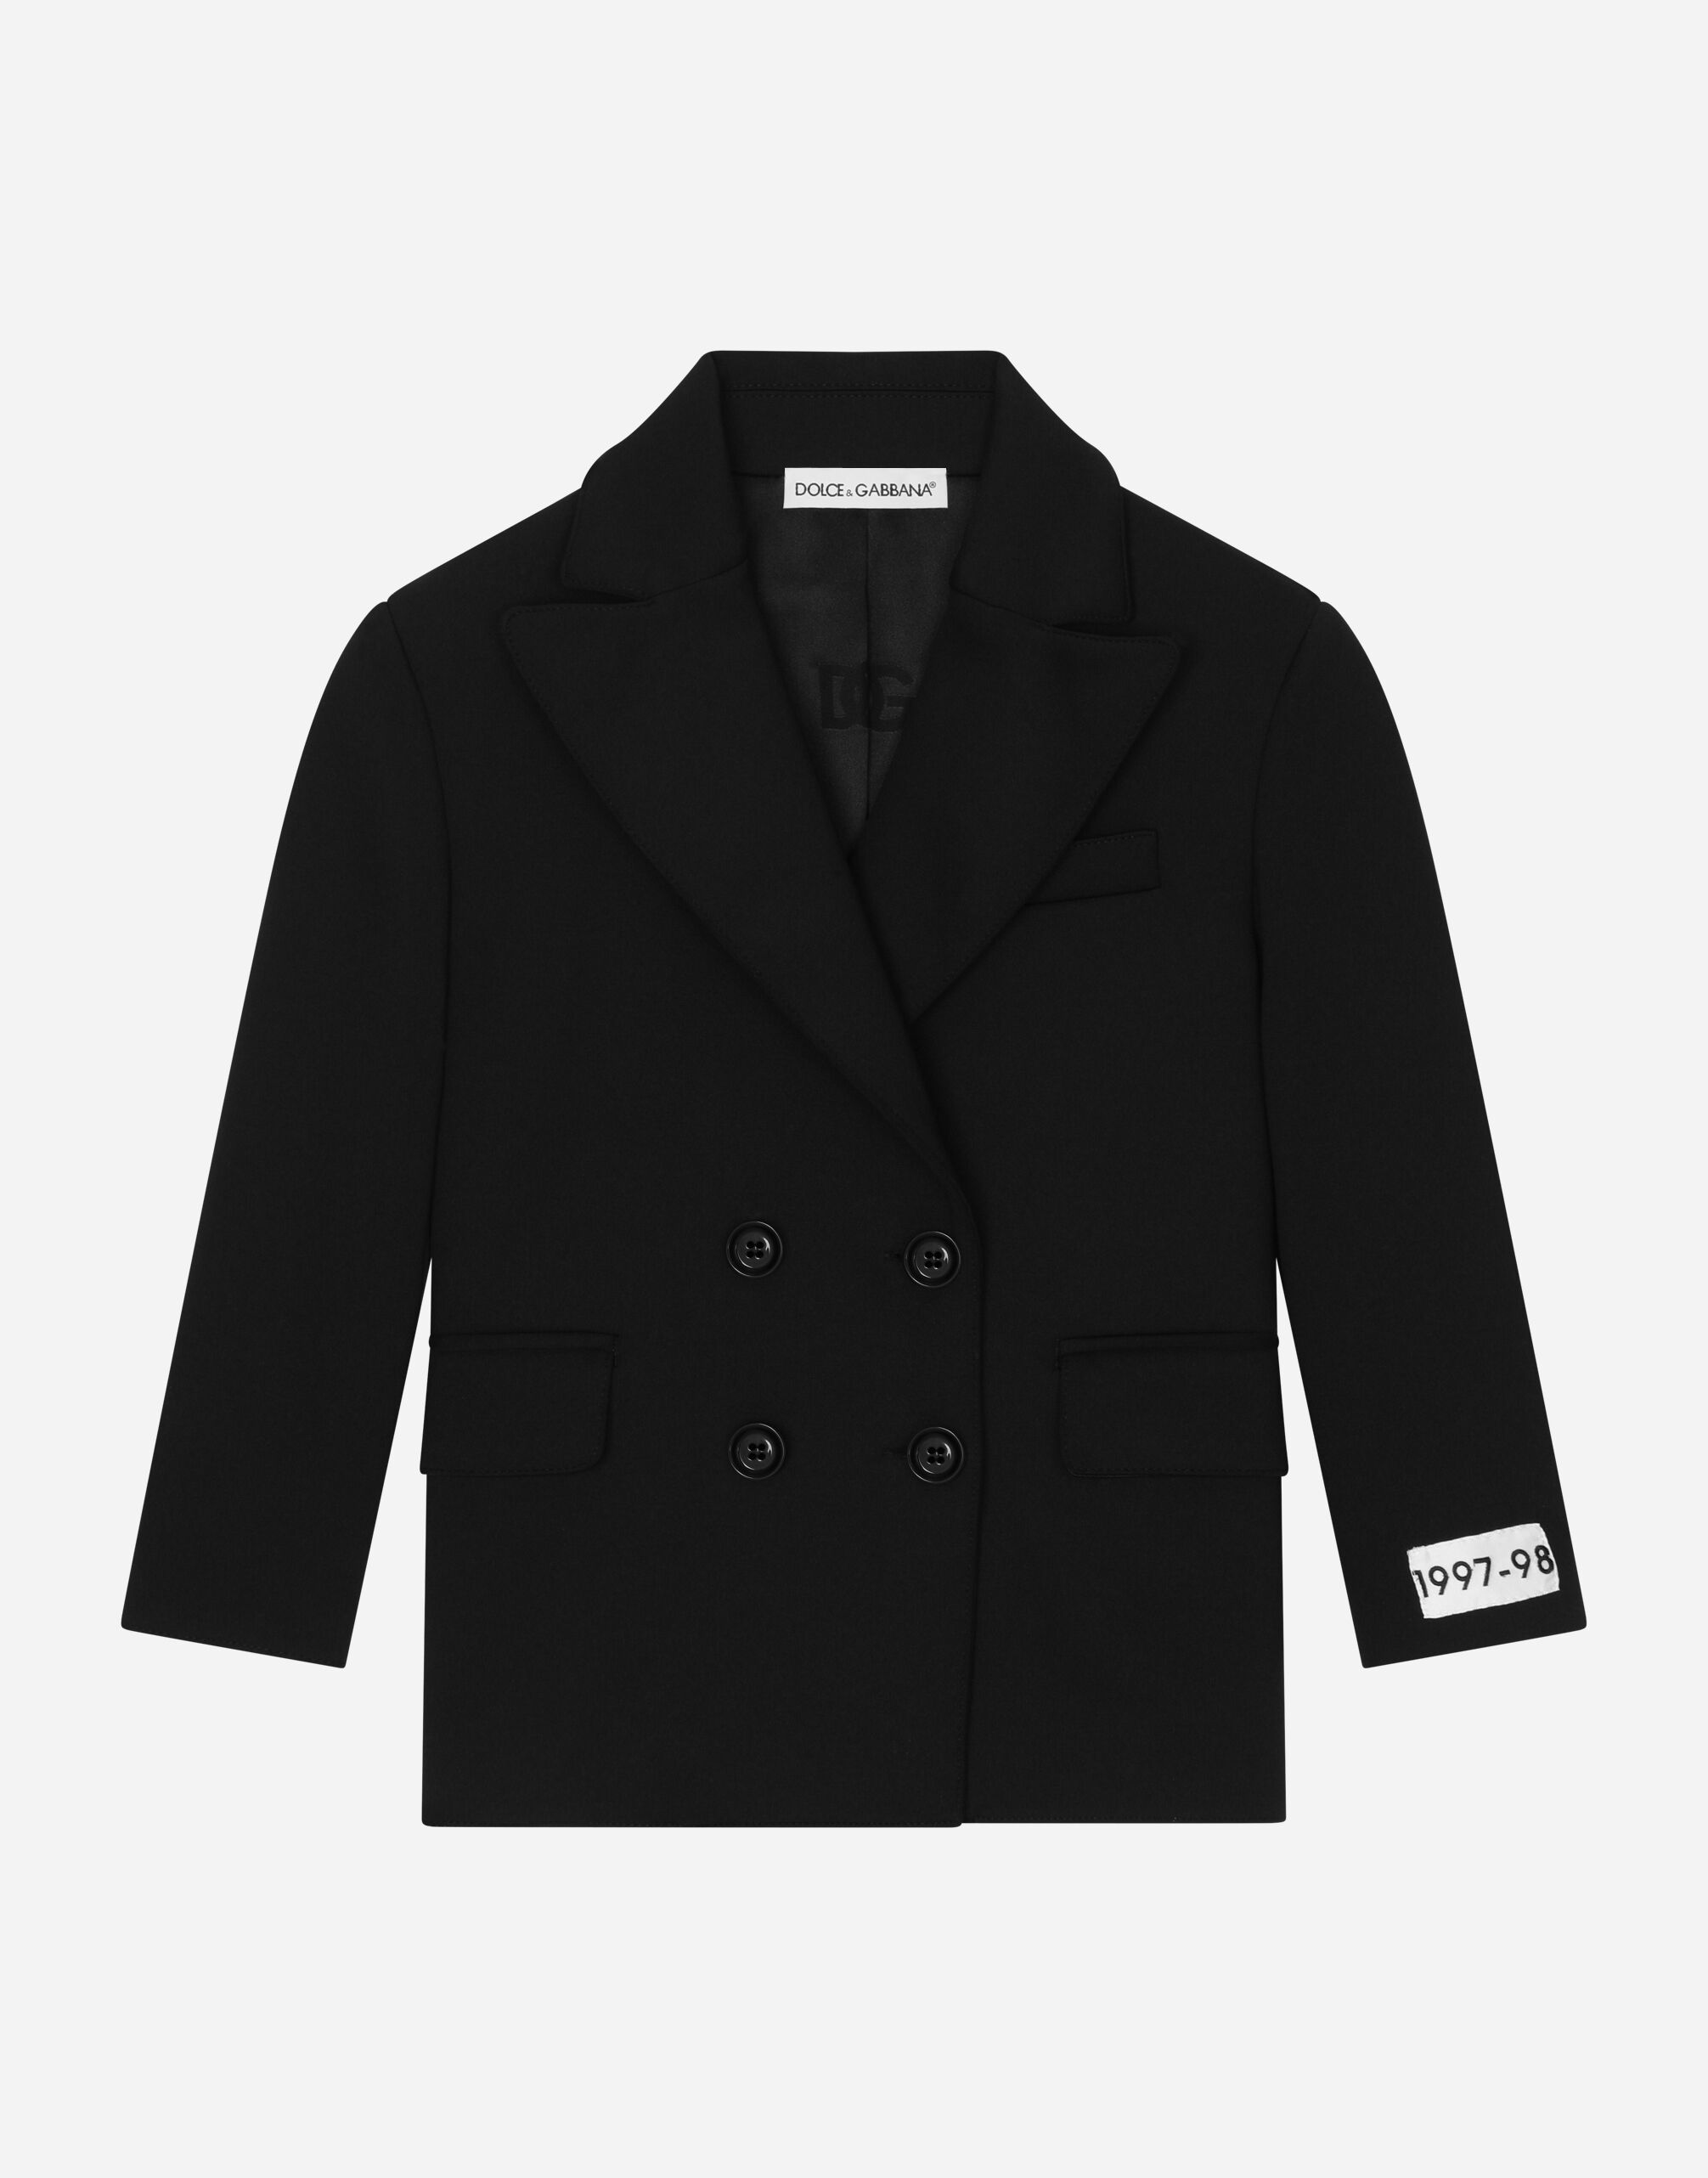 Dolce&Gabbana 科技平纹针织双排扣夹克 黑 L54C45G7K5C